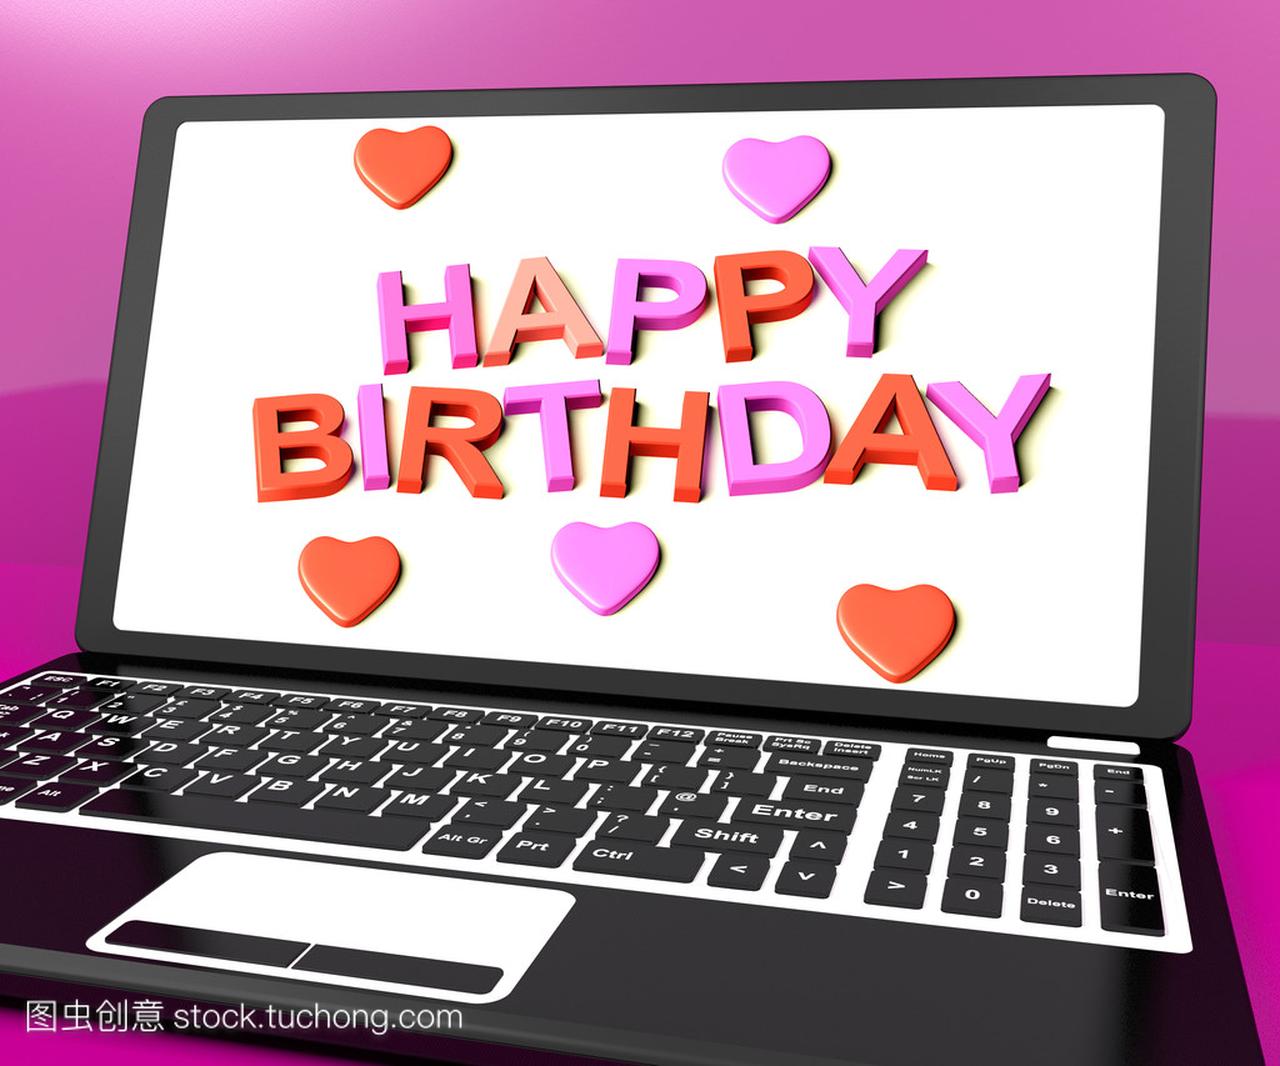 便携式计算机屏幕上显示在线问候生日快乐